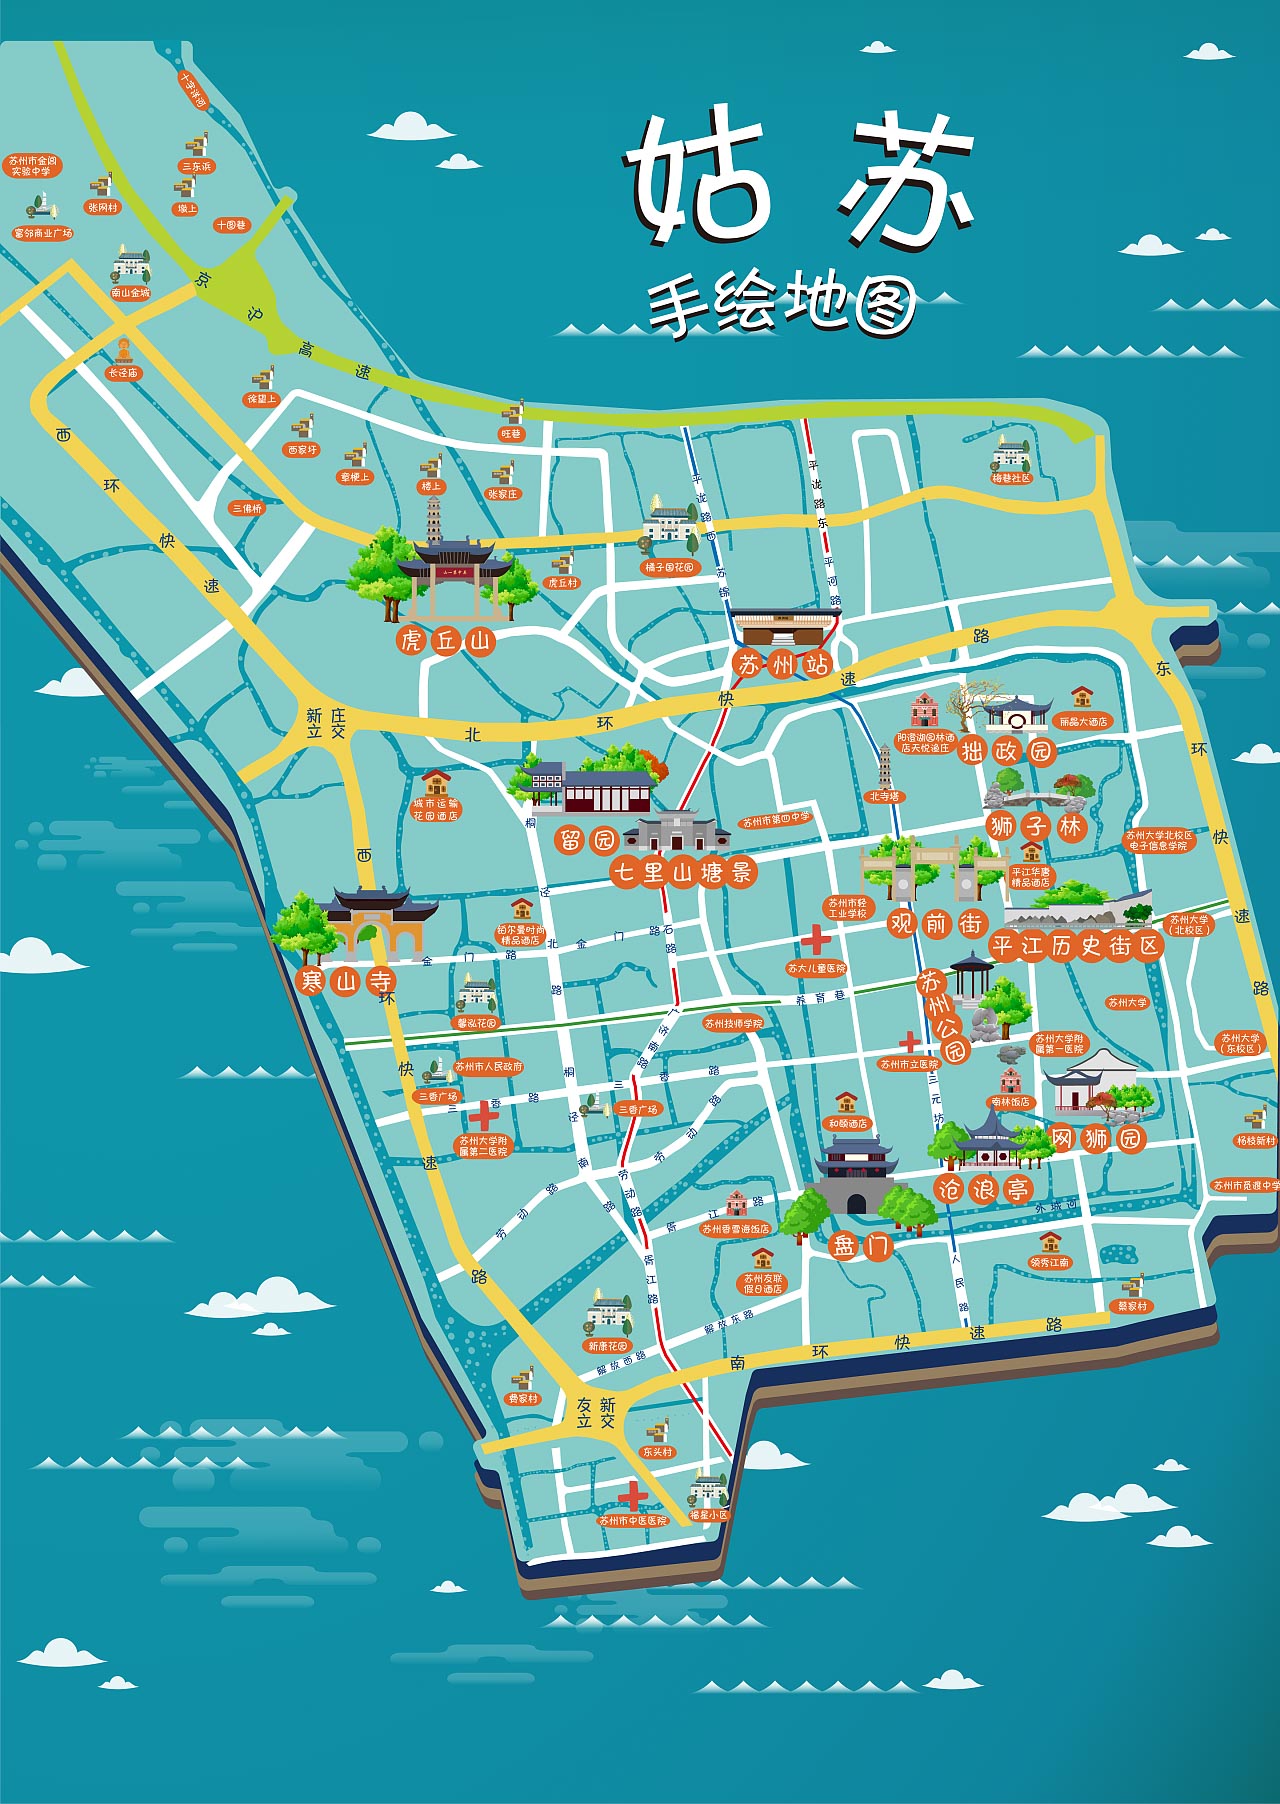 二道江手绘地图景区的文化宝藏